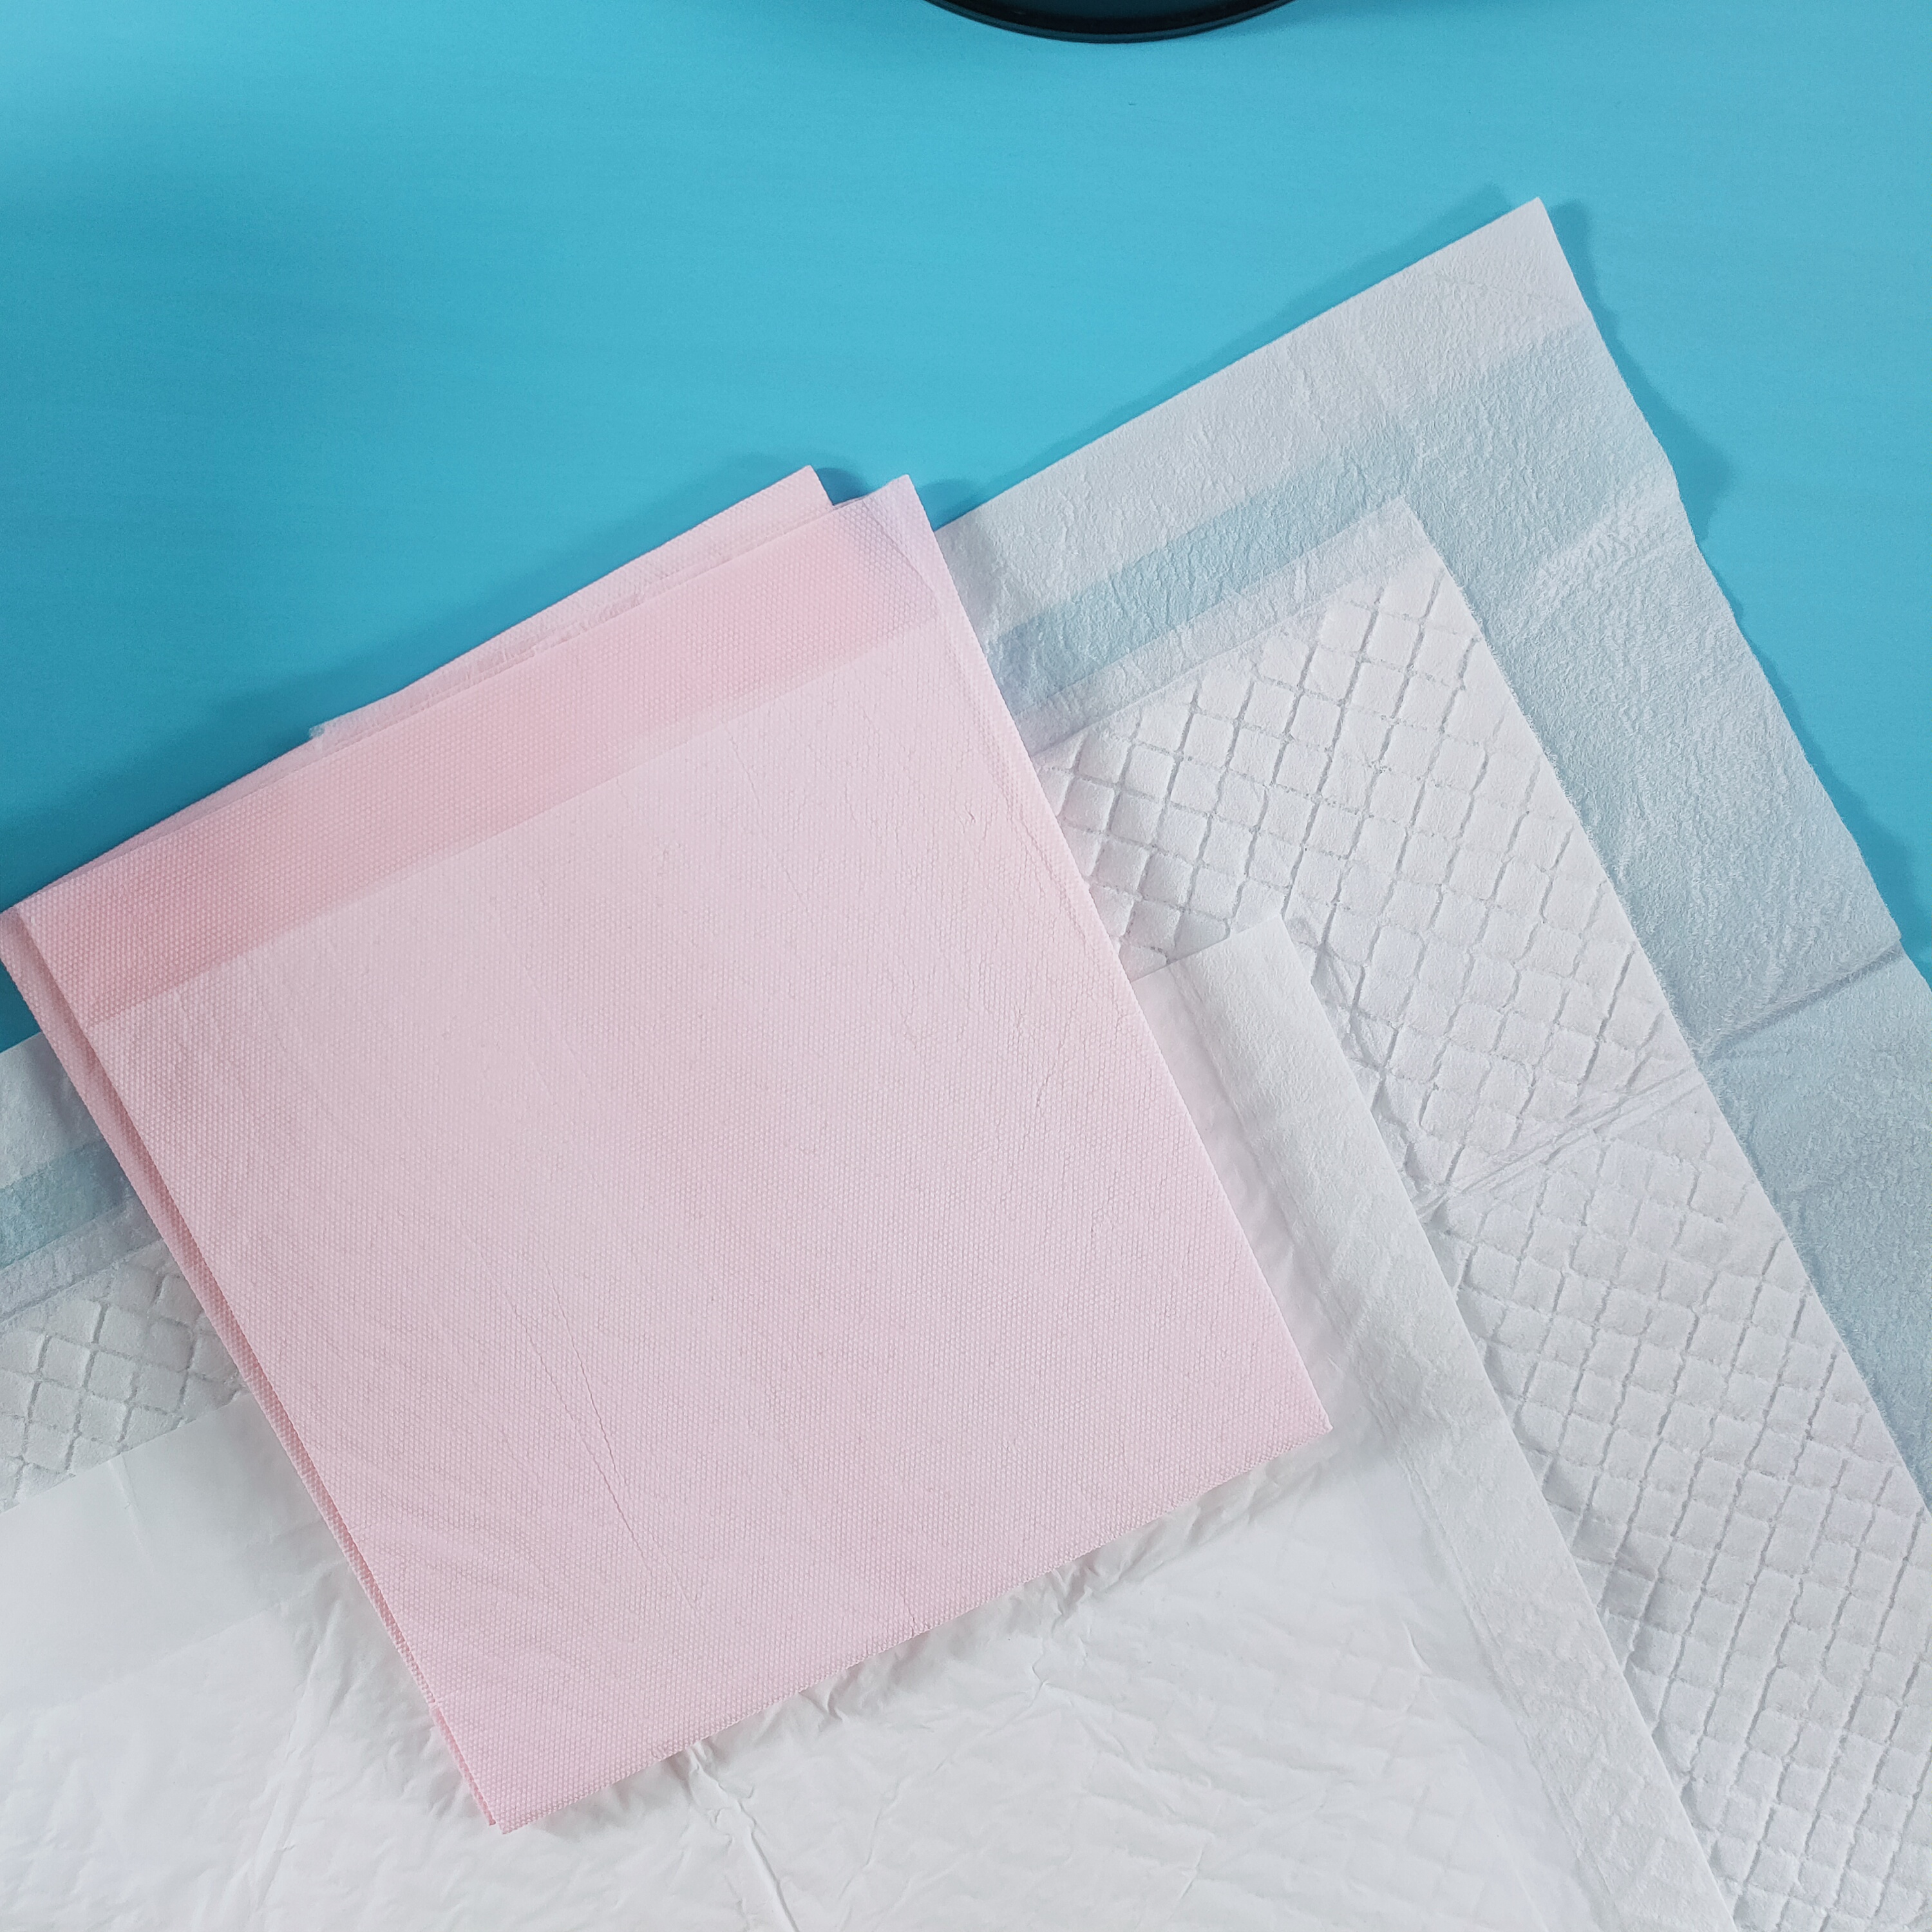 Produttore di incontinenza con superficie morbida e asciutta per pazienti infermieristici diretti in fabbrica sotto il cuscinetto per adulti